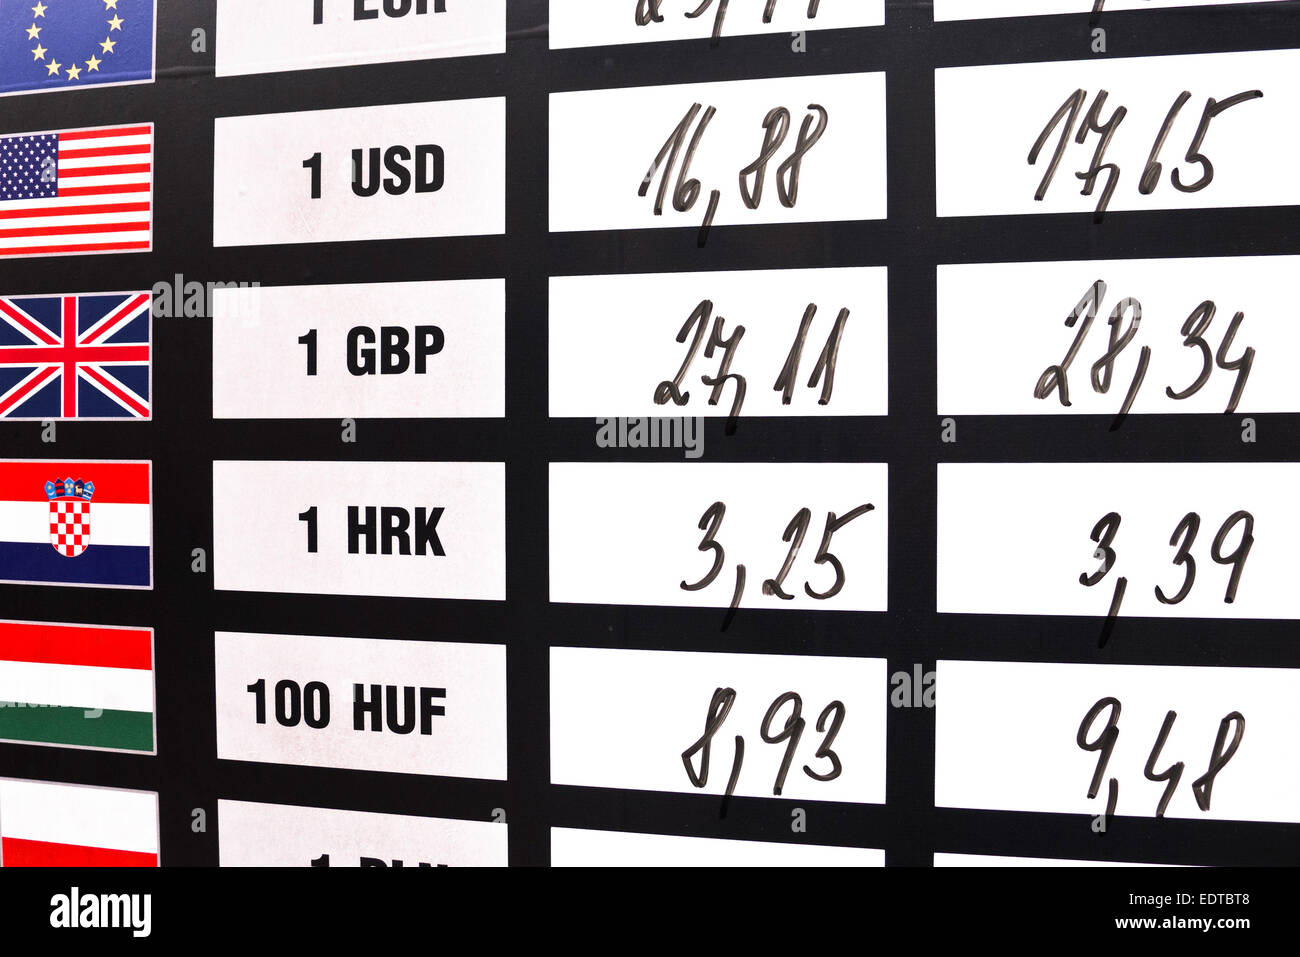 Scheda con valute e tassi di cambio Foto Stock